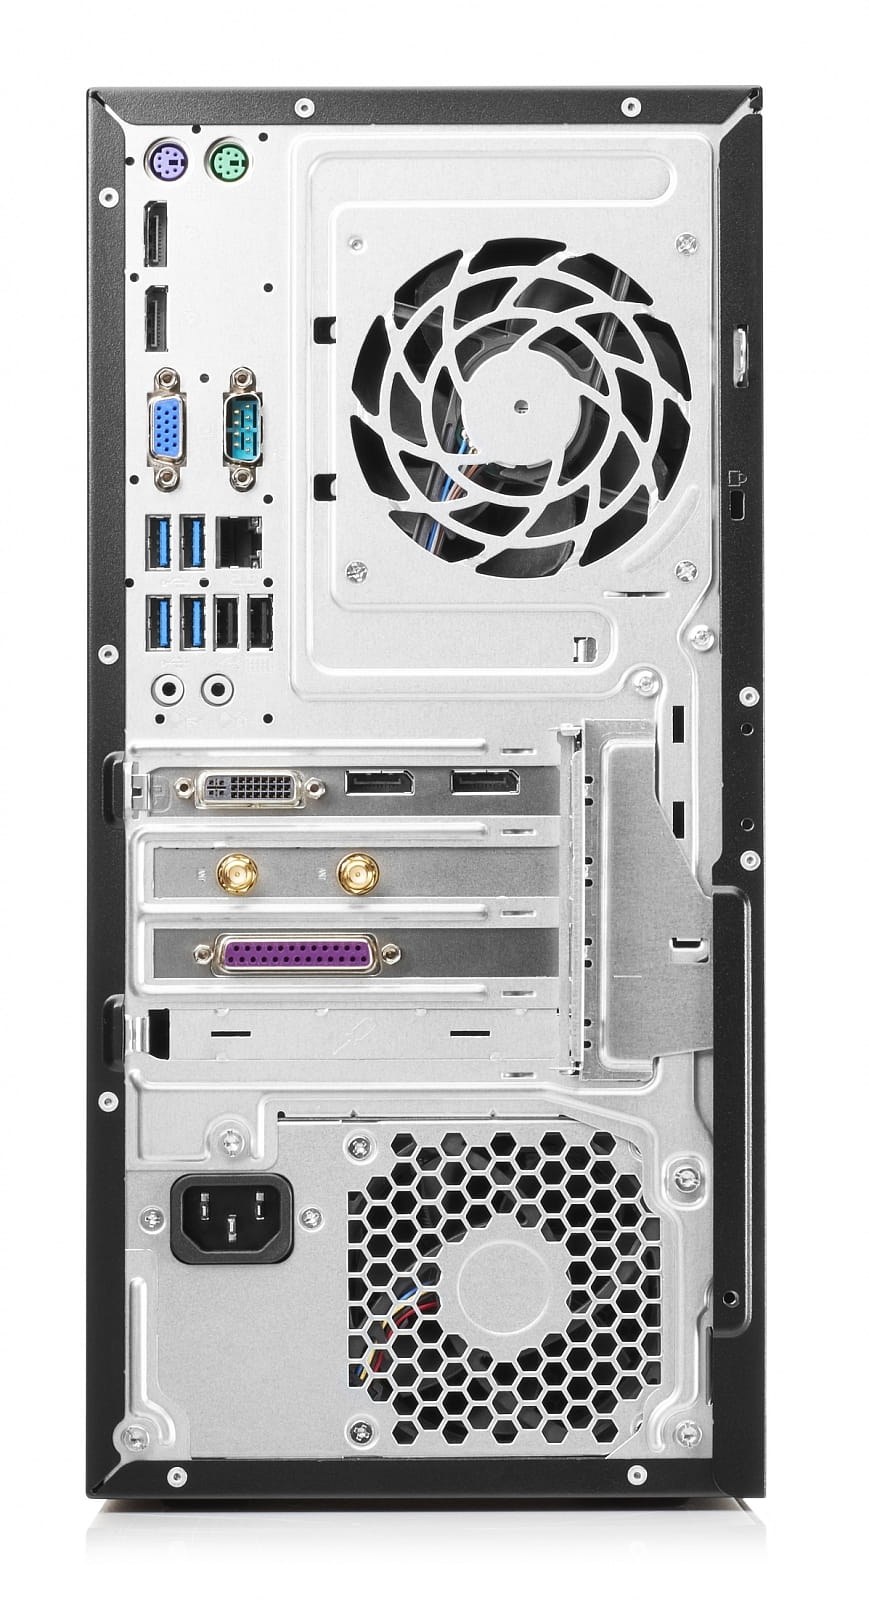 PC HP EliteDesk 705 G3 MT / AMD Ryzen 5 PRO 1500 / 8GB DDR4 / 1.0TB HDD / AMD Radeon R7 430 2GB Graphics / Windows 10 Professional / 2KR83EA#ACB /